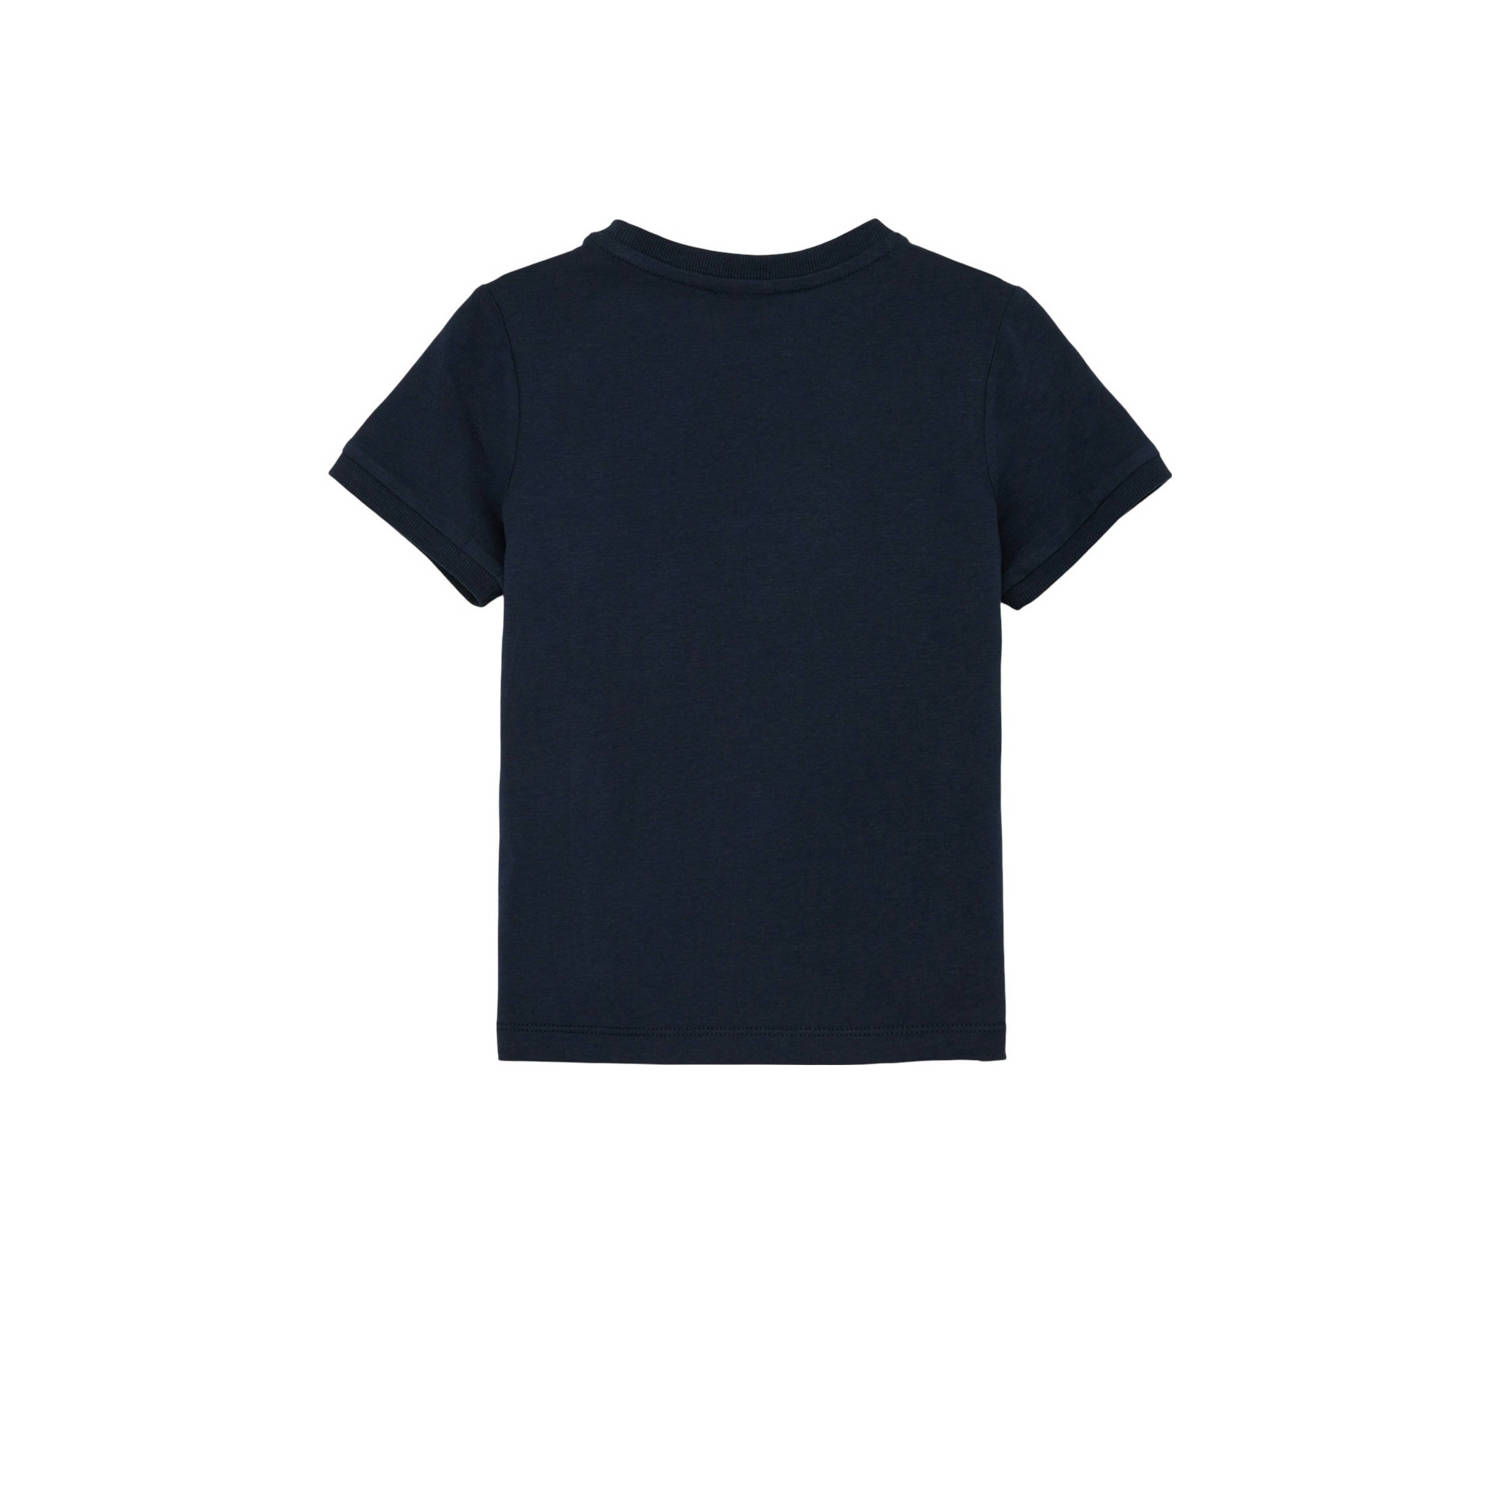 S.Oliver T-shirt met printopdruk donkerblauw Jongens Katoen Ronde hals 128 134